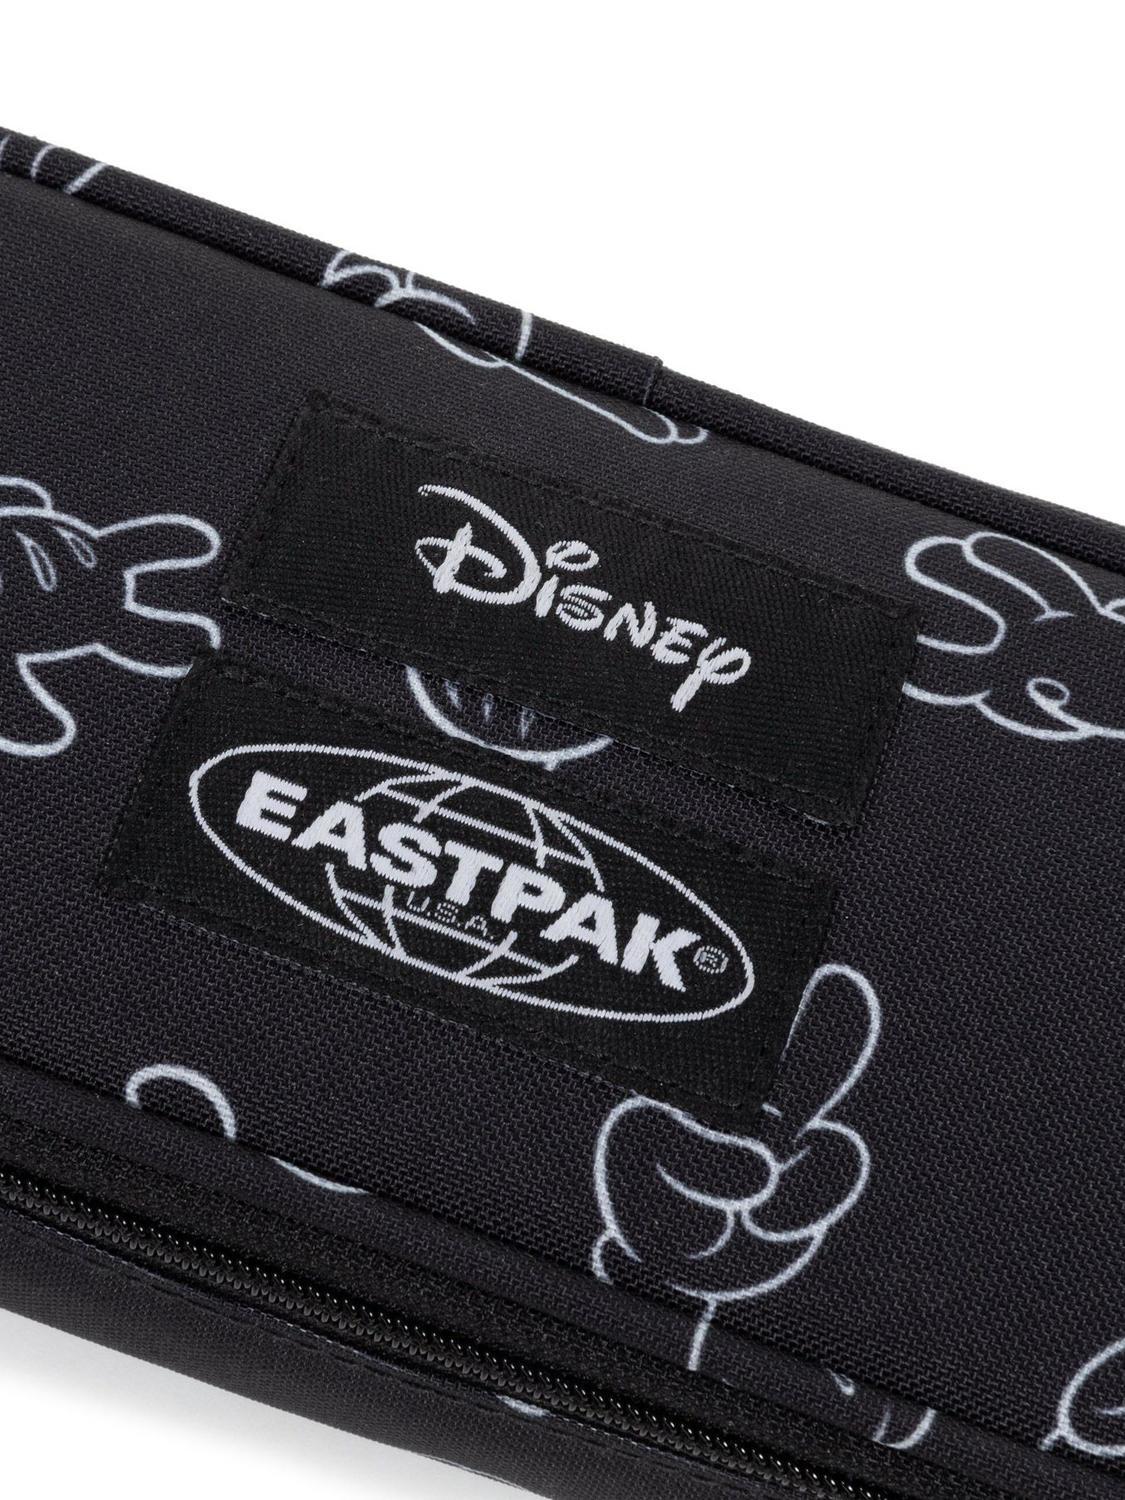 Eastpak Oval Single Disney 100 Trousse Mains De Mickey - Achetez À